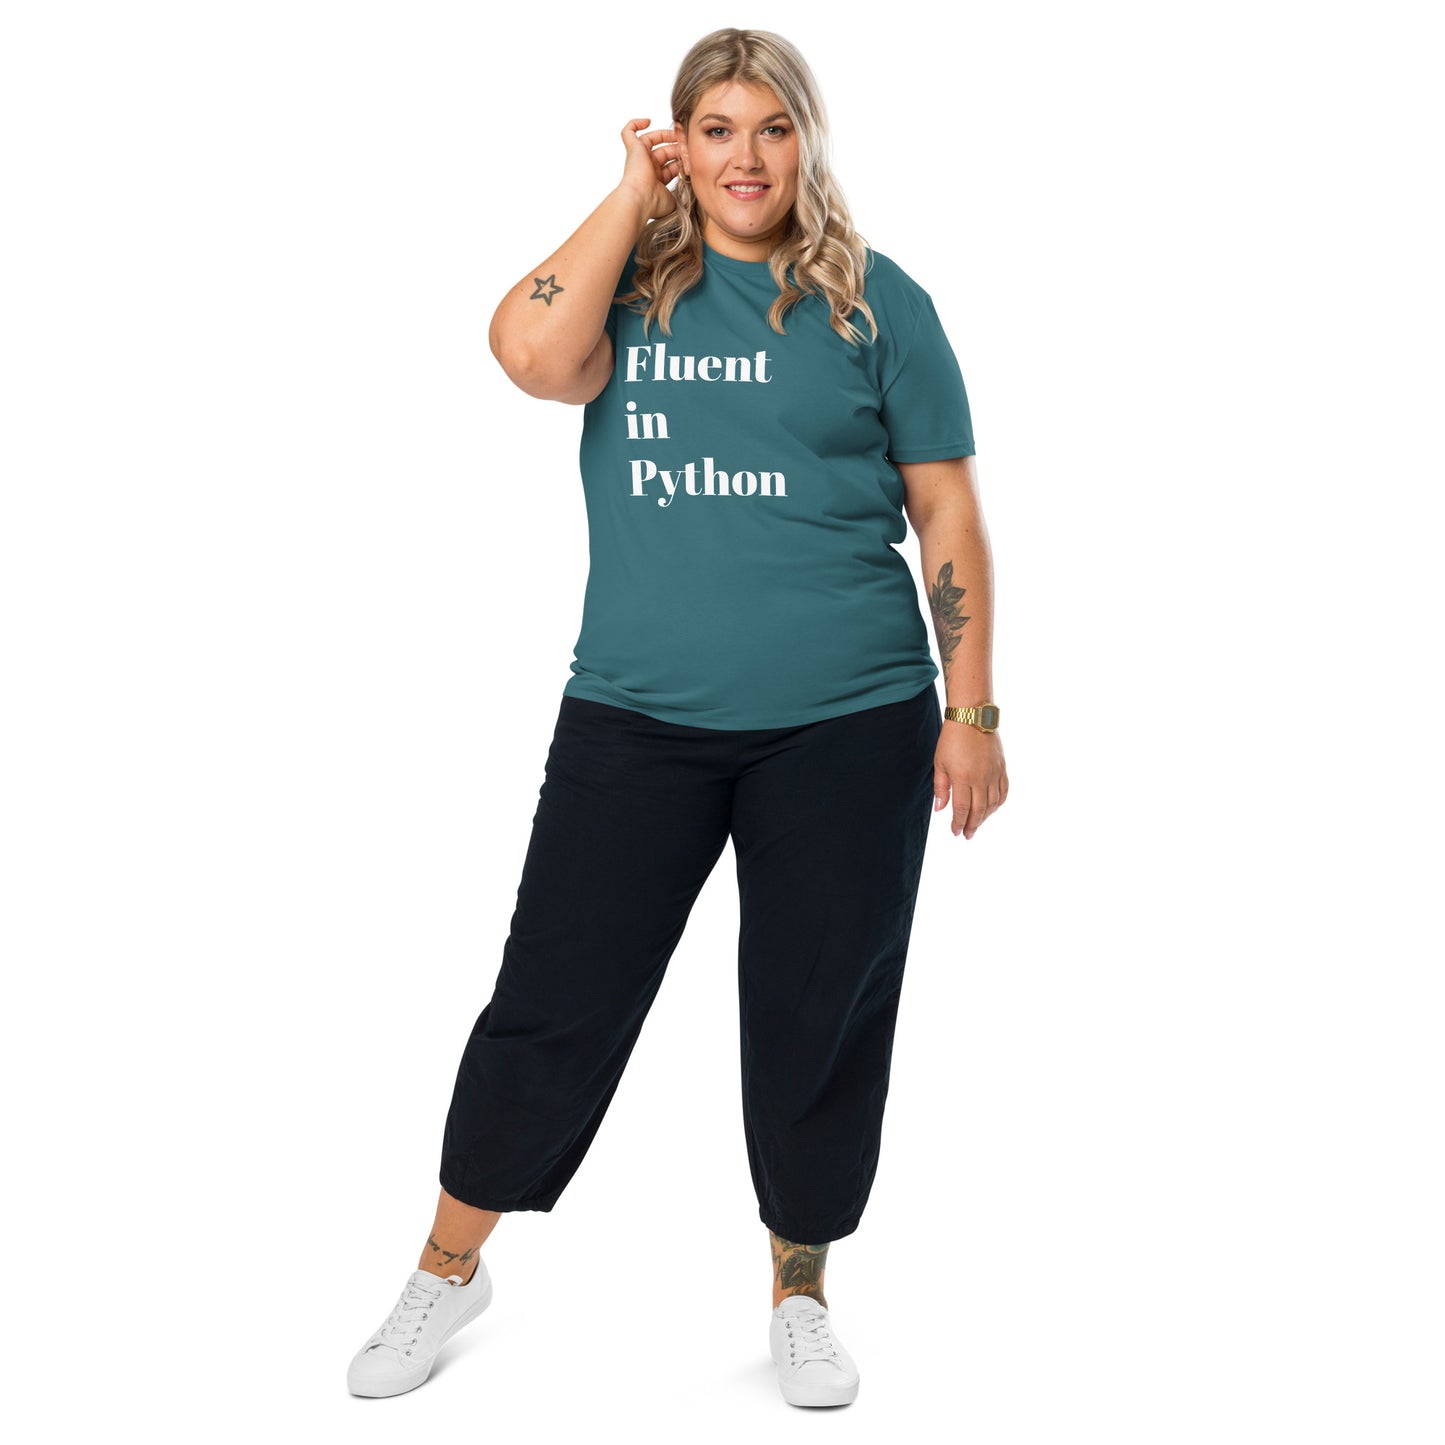 Fluent in Python Unisex Organic Cotton T-shirt